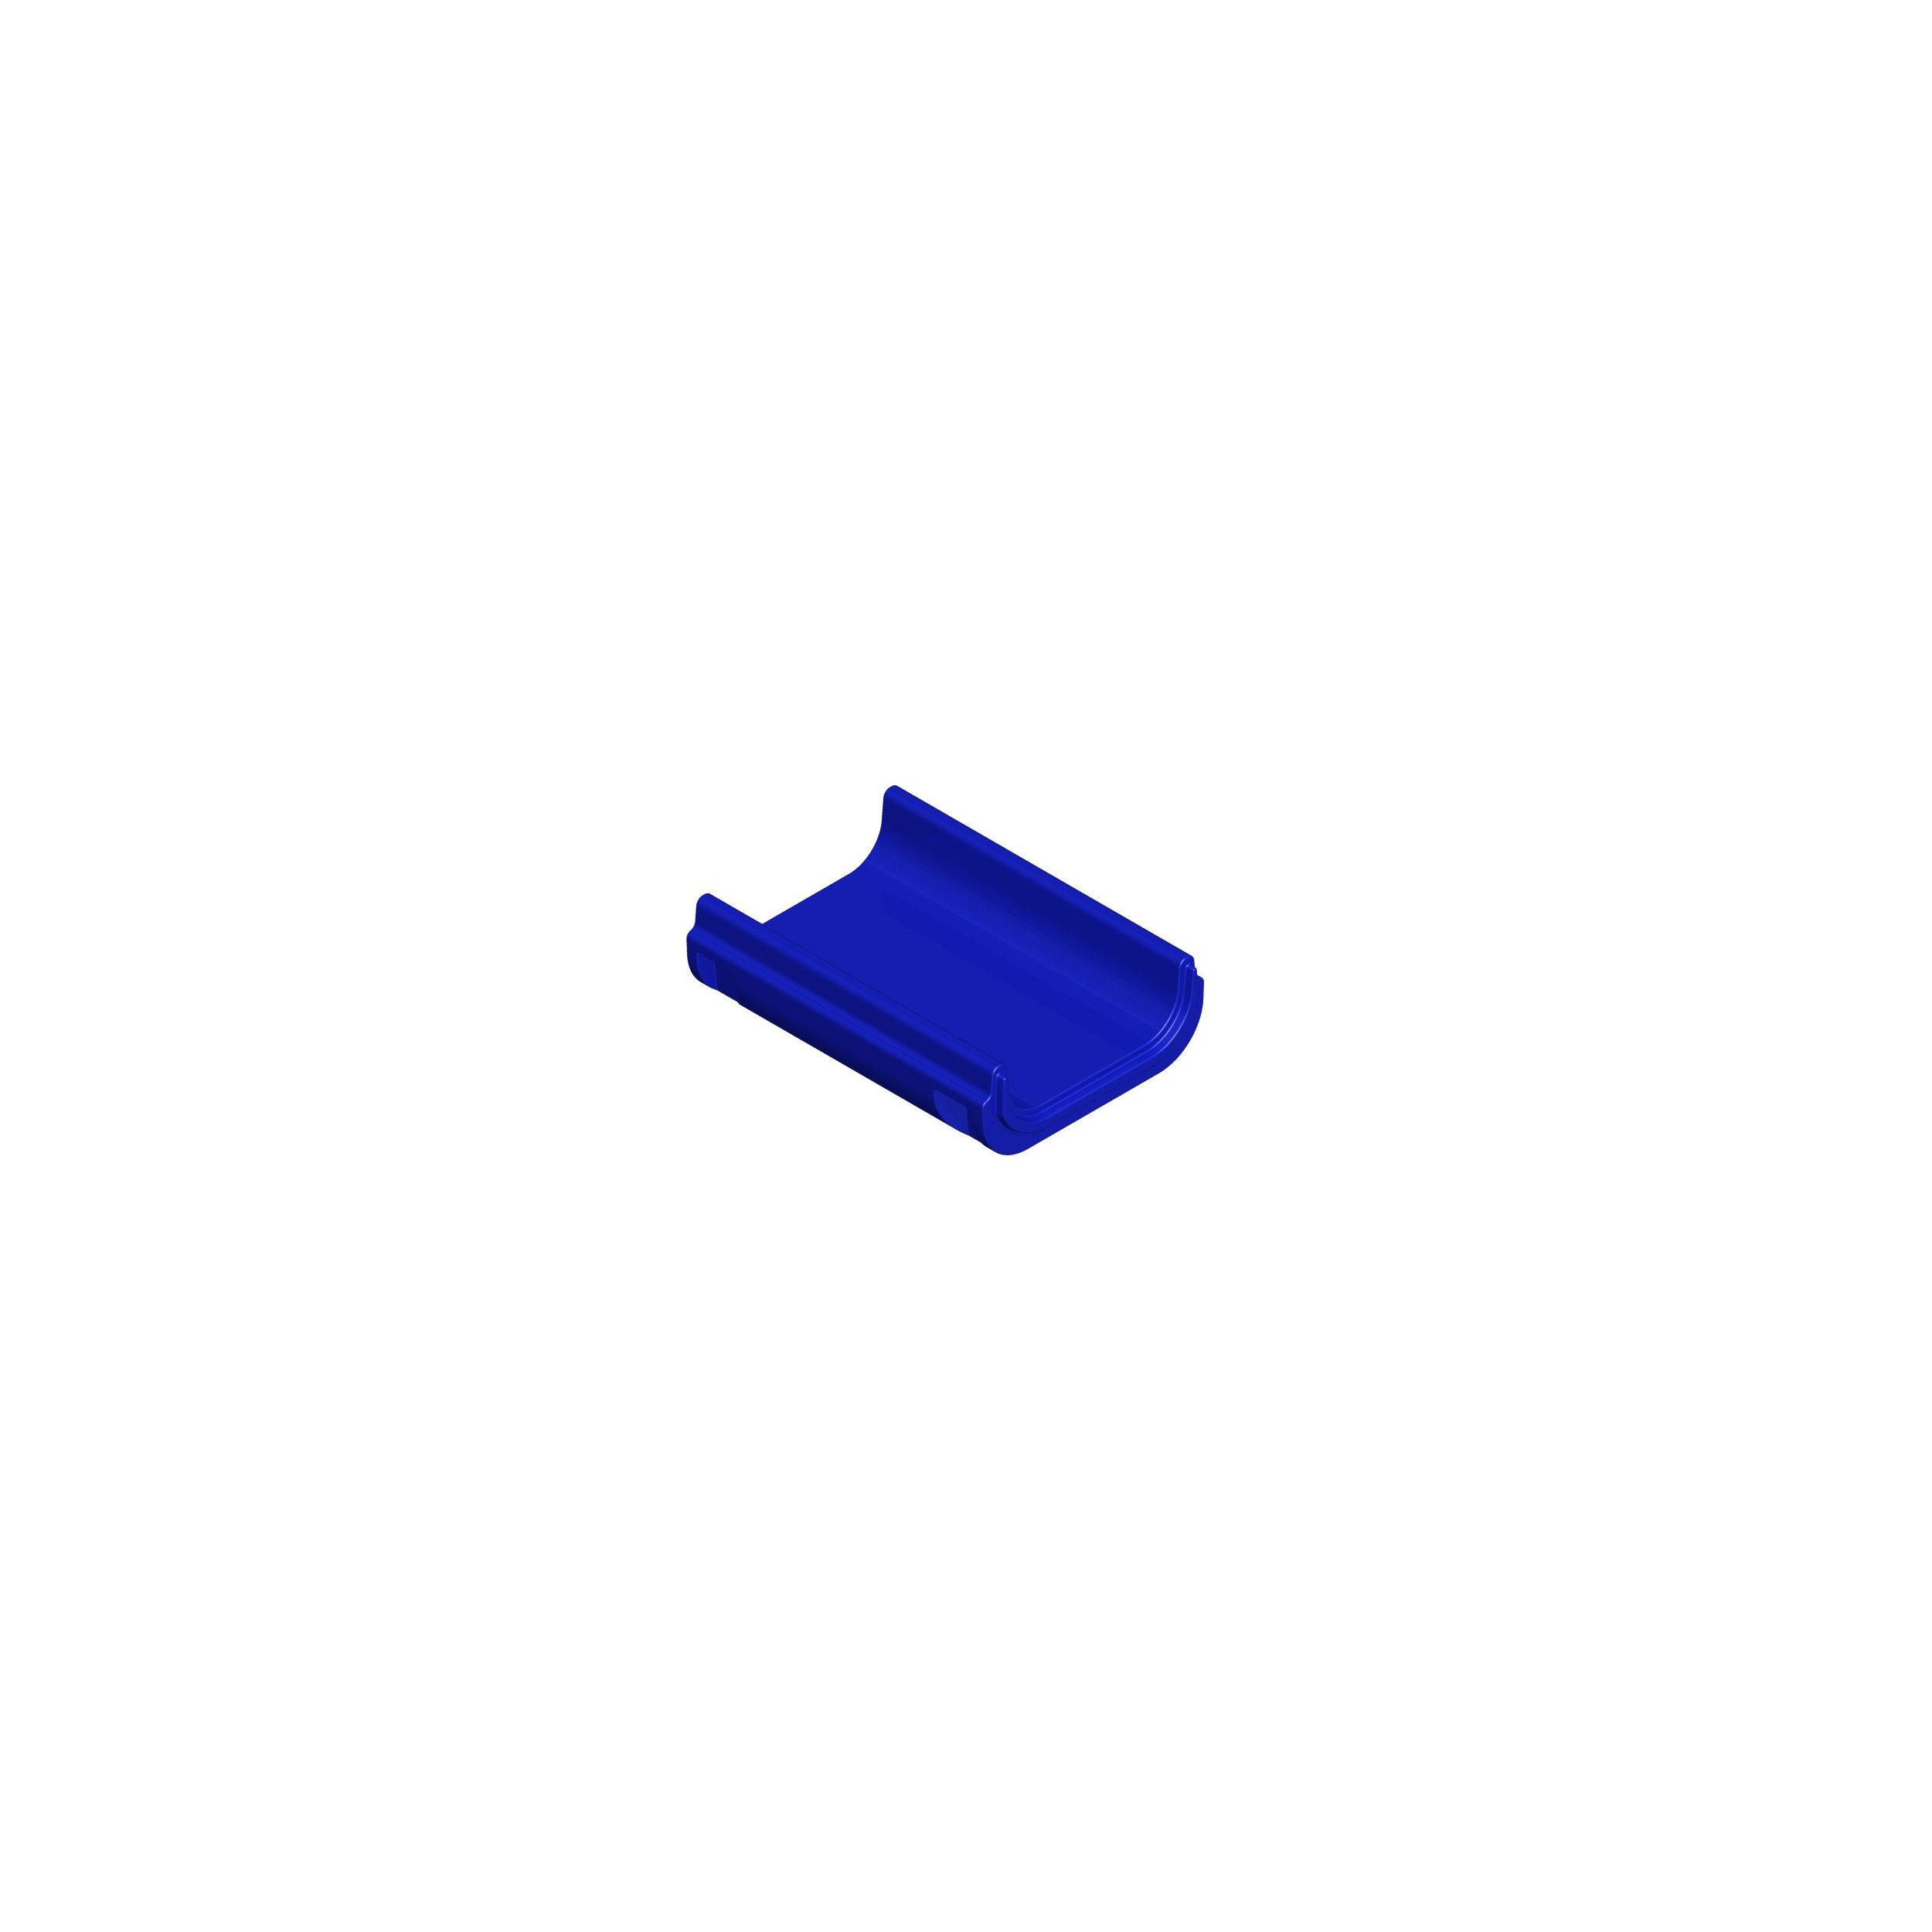 Modul für Hangrutsche - Mittelteil - Länge 106 cm blau